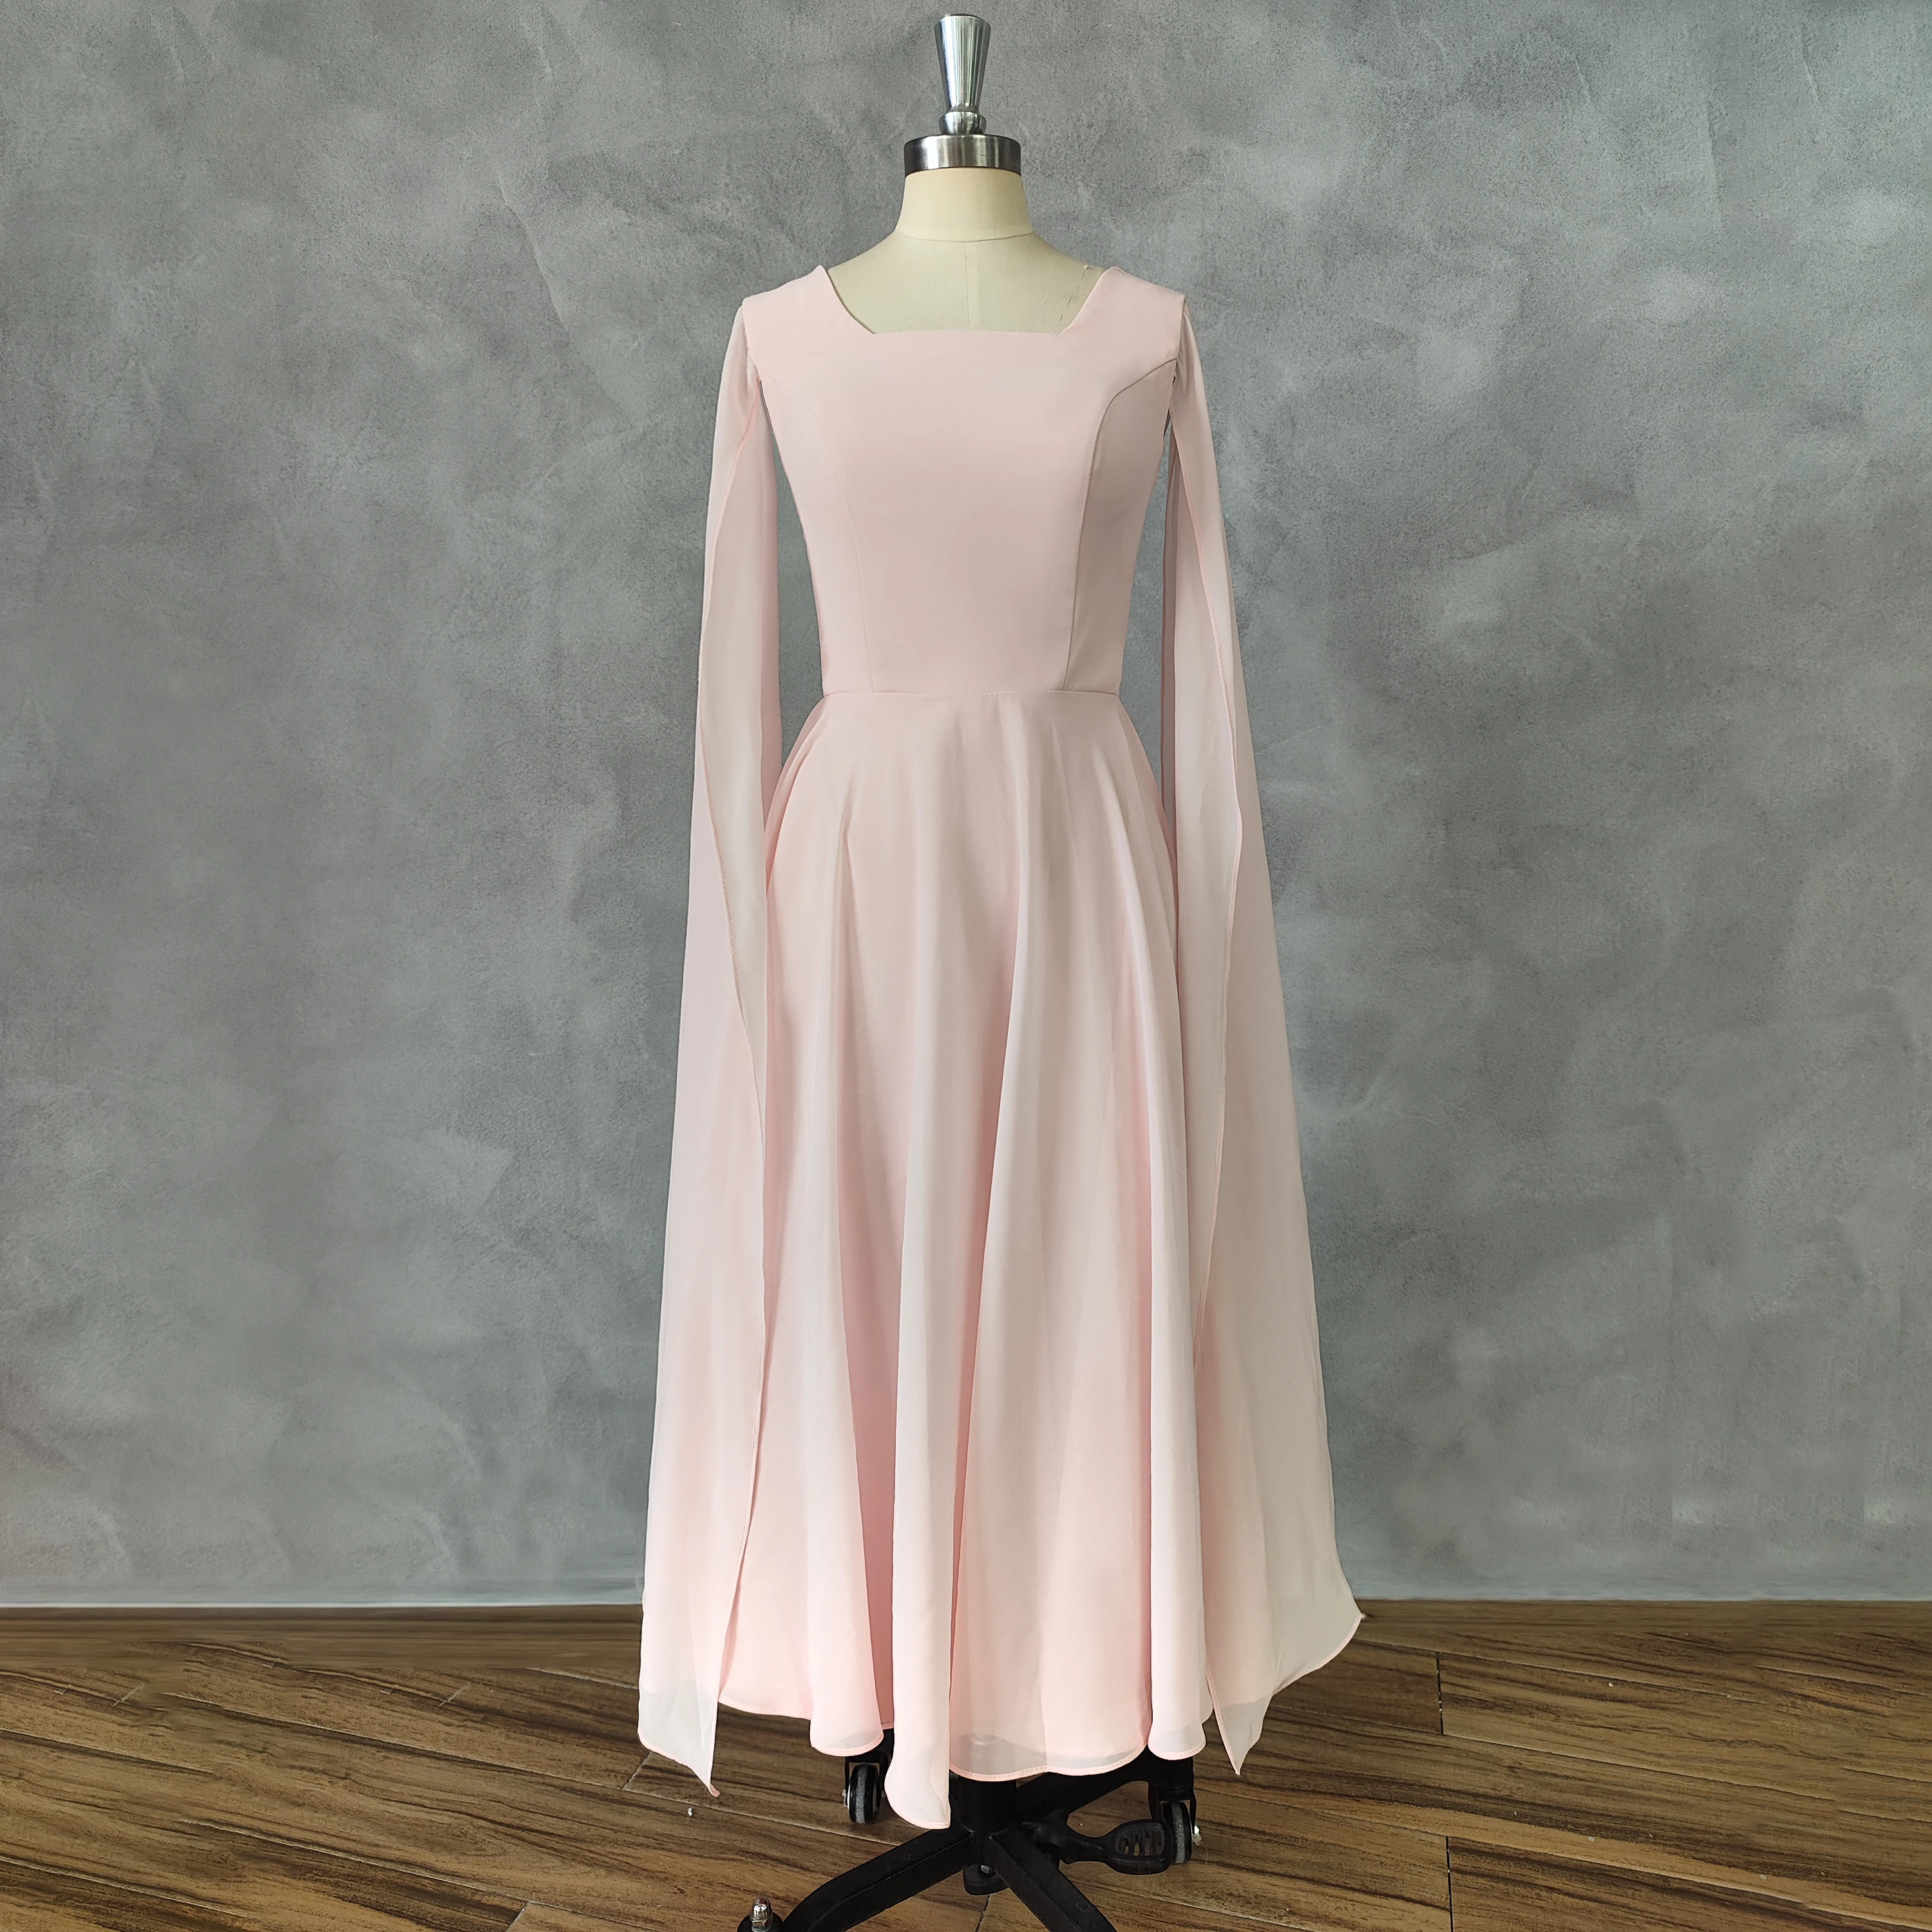 

Женское платье на выпускной DIDEYTTAWL, Простое розовое платье с длинными рукавами и О-образным вырезом, ТРАПЕЦИЕВИДНОЕ вечернее платье длиной до середины икры на молнии, 2023